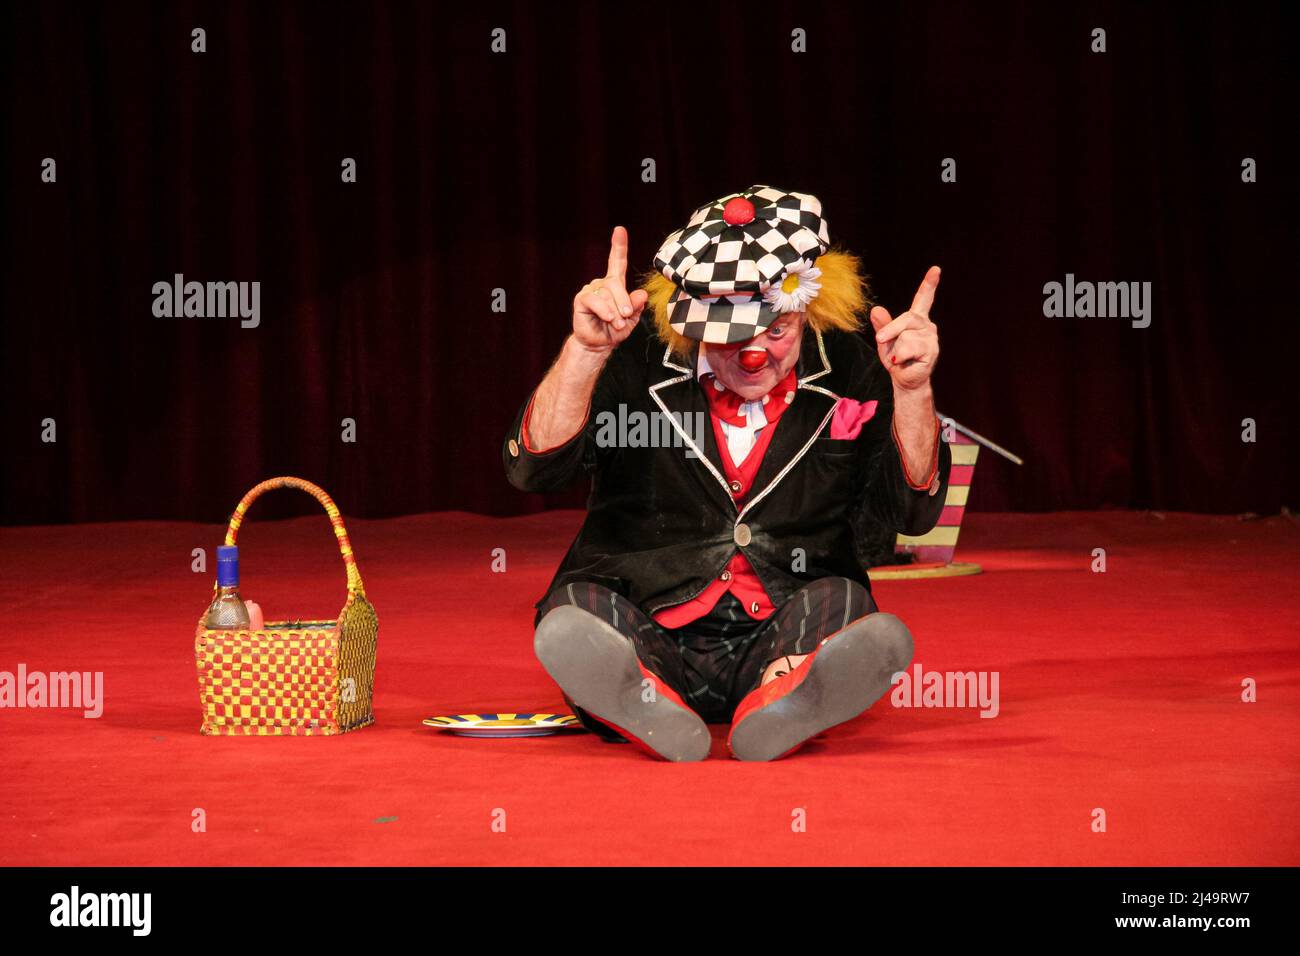 Oleg Popov (1930-2016), célèbre clown russe, mime et artiste de cirque, interprète en costume d'Ivanuska un pique-nique avec son chien au cirque d'État russe à Wetzlar, en Allemagne. 13th mars 2008. Crédit: Christian Lademann / LademannMedia Banque D'Images